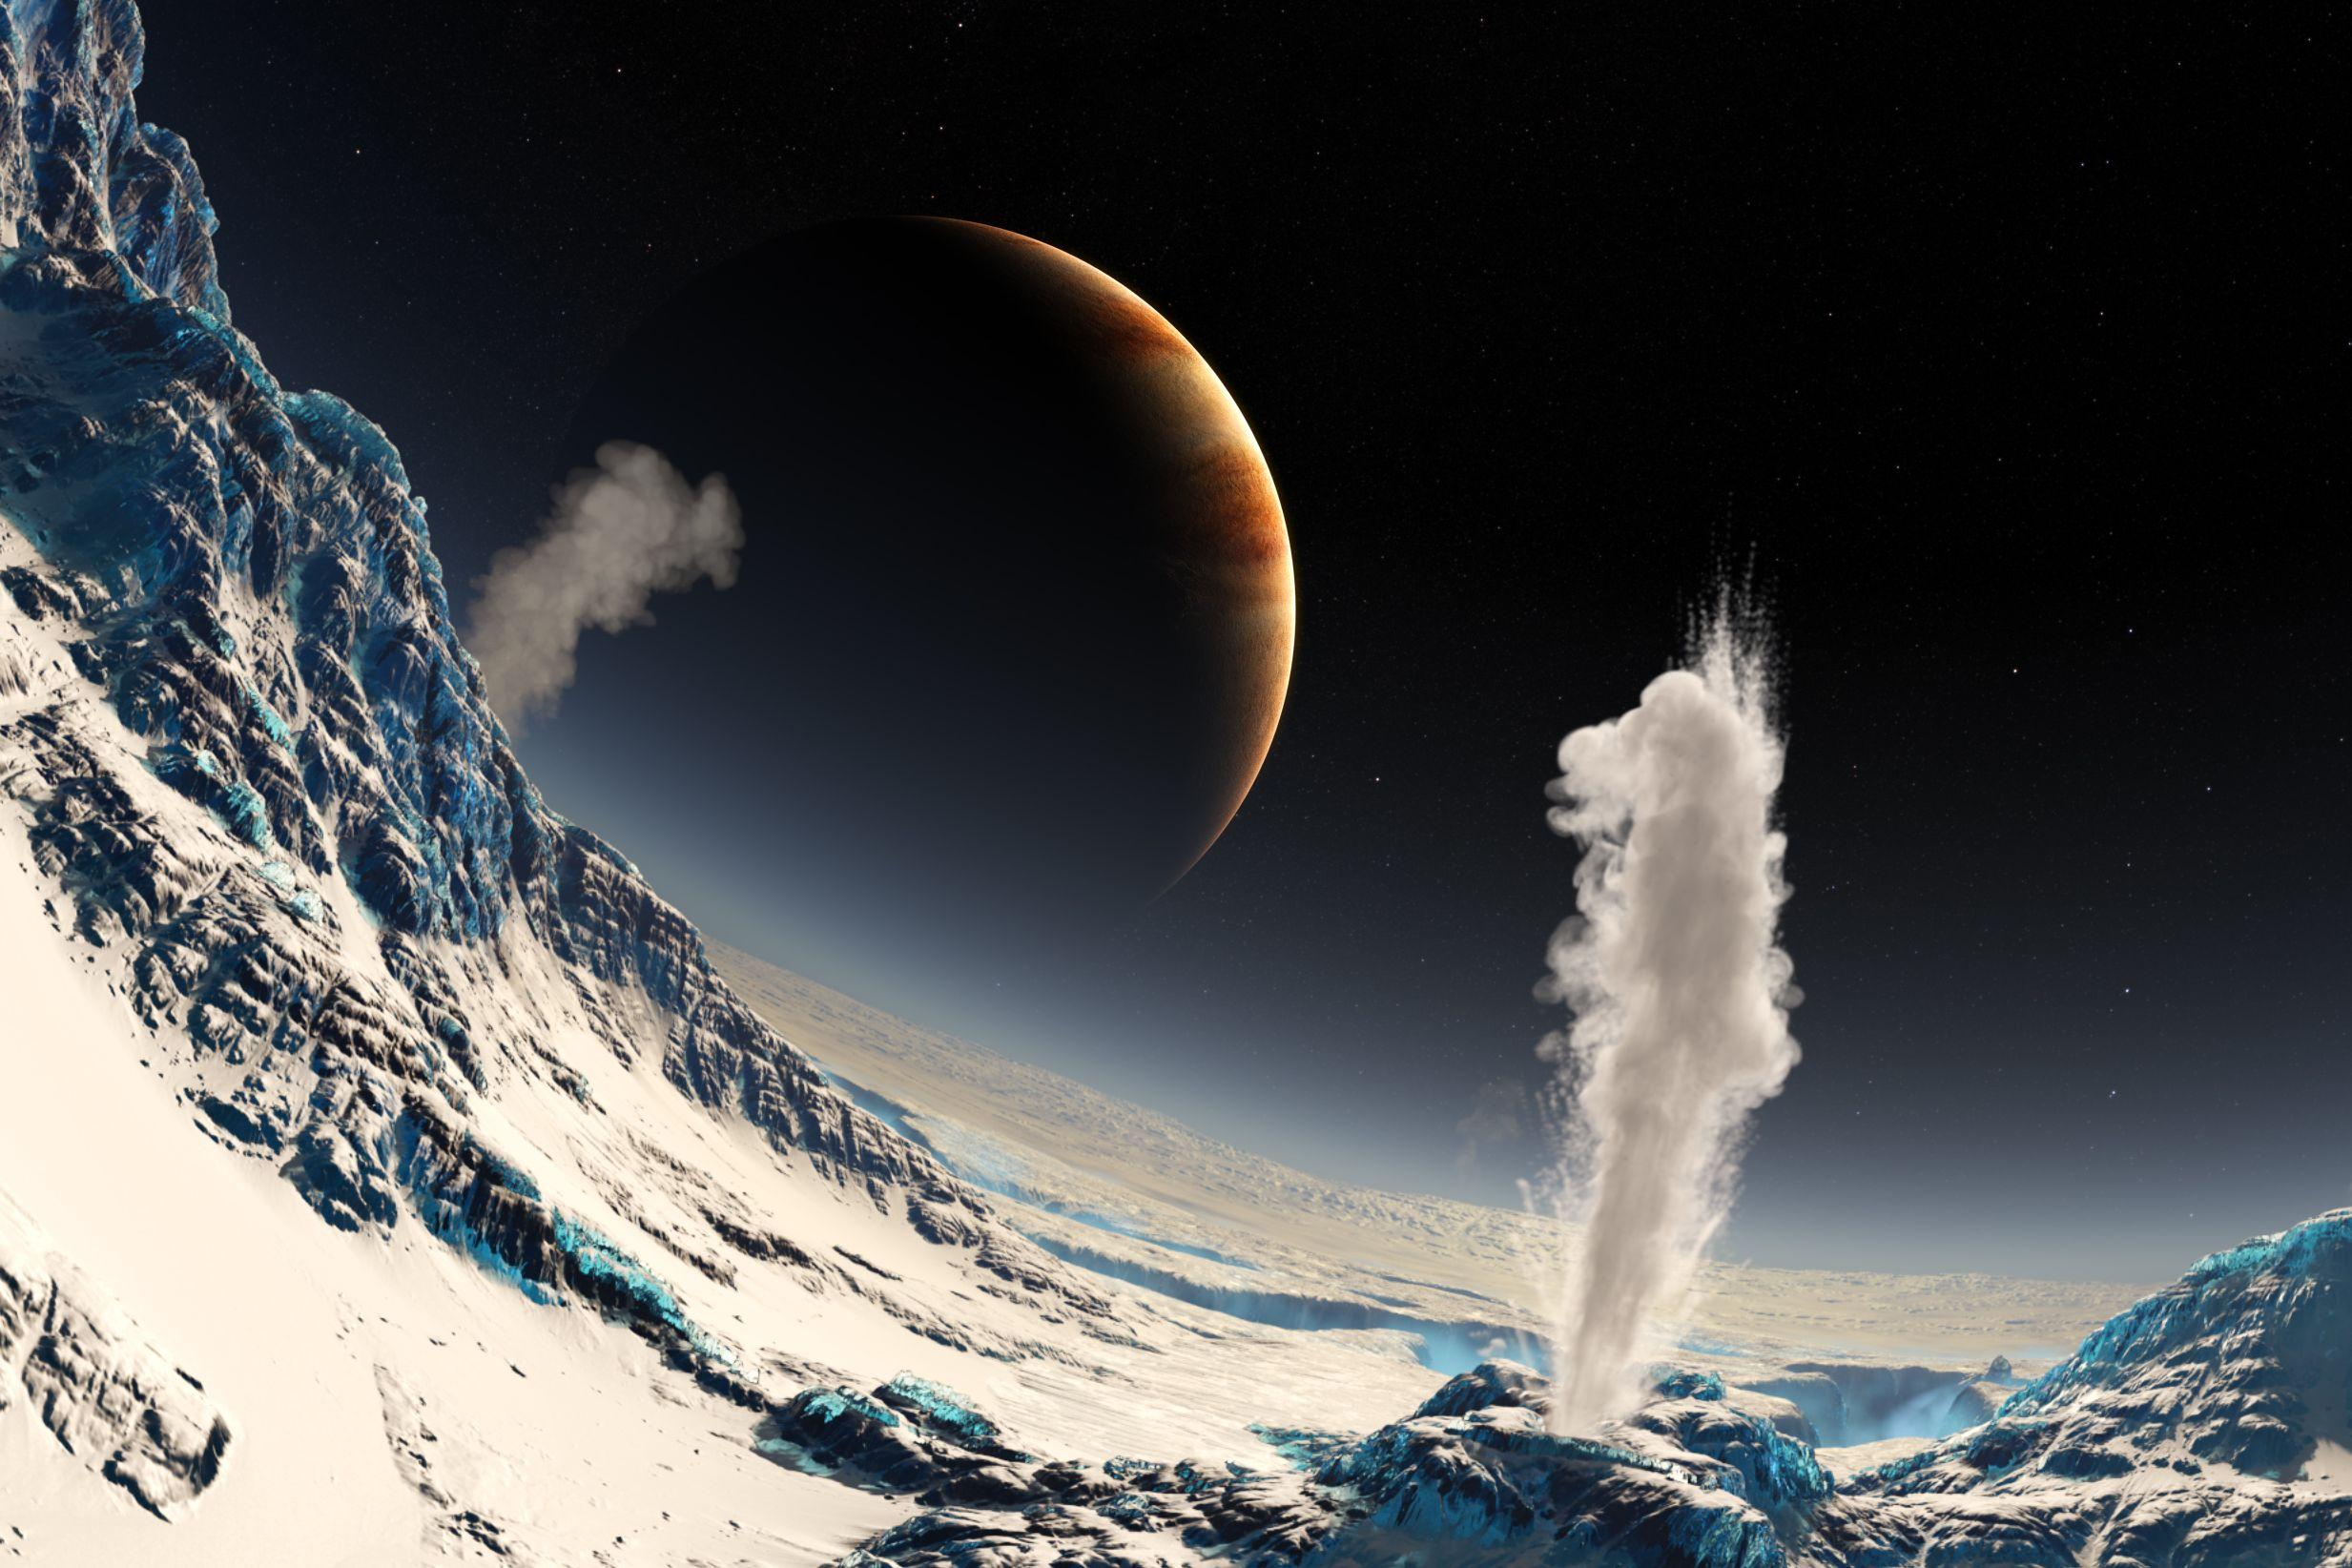 香港太空館天象廳四月一日起放映全新立體球幕電影《星際航行者3D》，讓觀眾跟隨美國太空總署在一九七七年發射的航行者一號和二號太空探測器展開一場星際旅程，探索太陽系遙遠行星之謎。圖示木星的衞星──木衞二「歐羅巴」，它的冰層之下隱藏了液態水海洋。